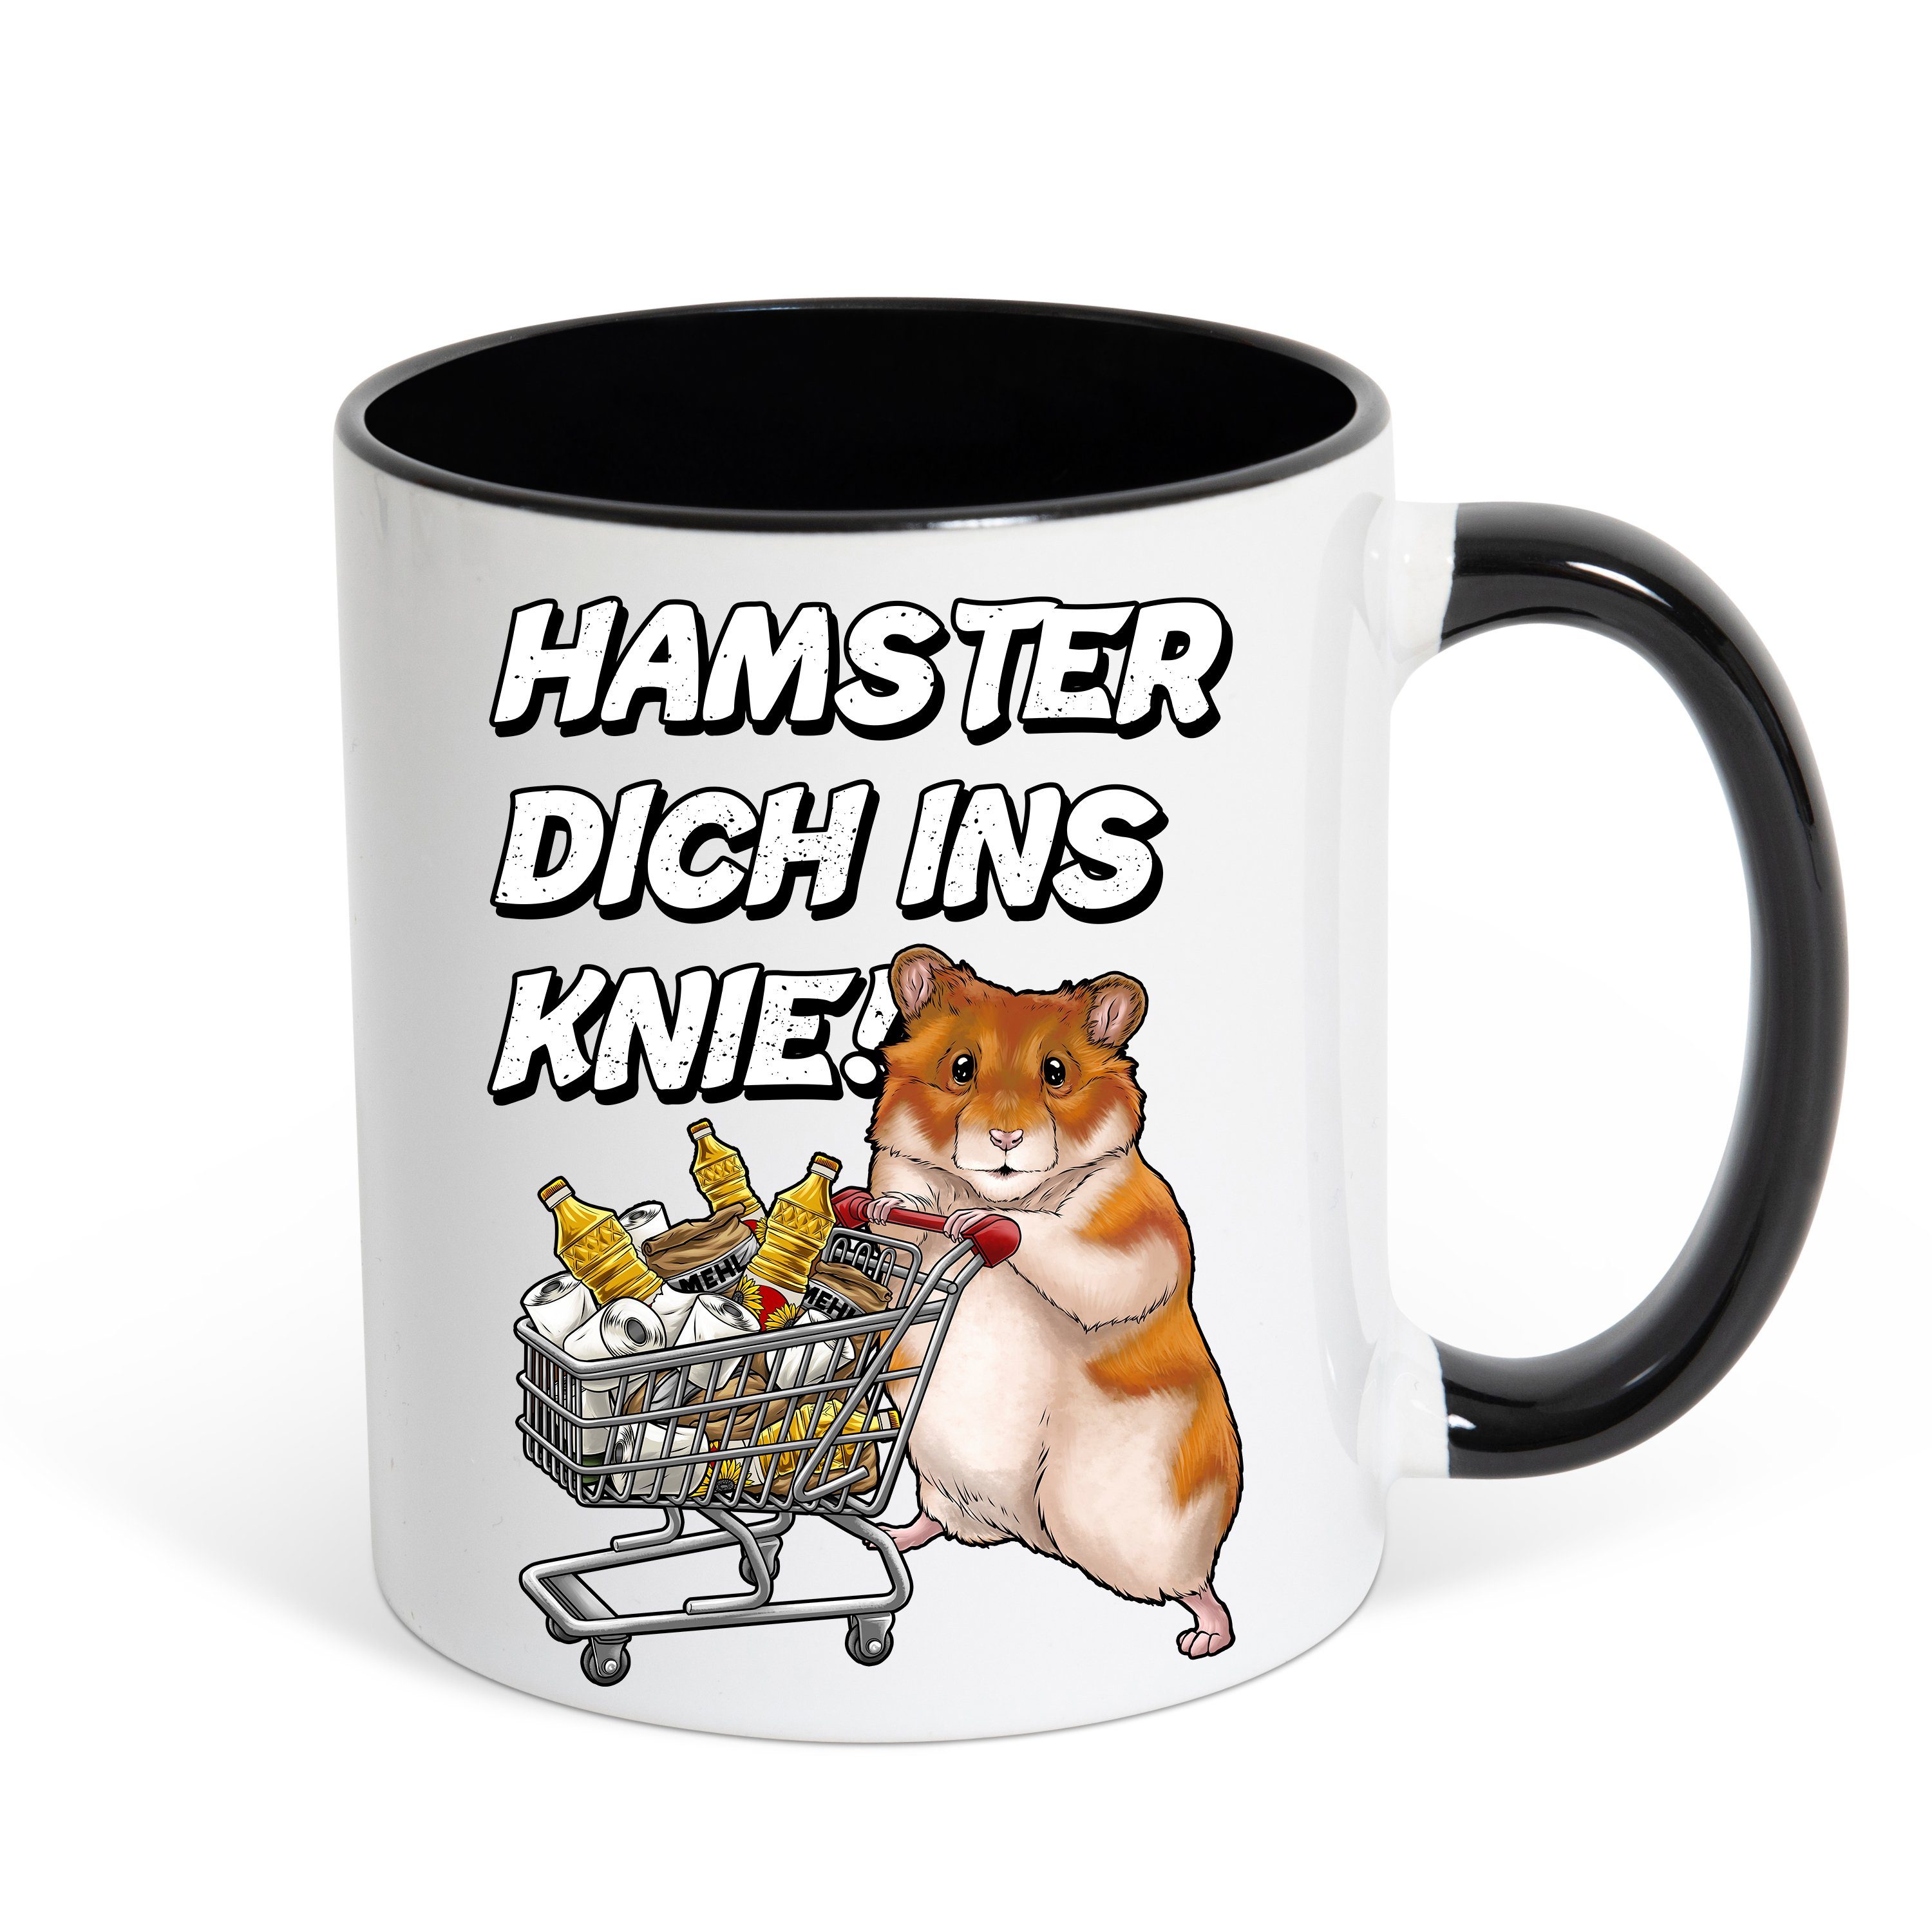 Youth Designz Tasse Hamster Dich Ins Knie Kaffeetasse Geschenk mit lustigem Fun Print Spruch, Keramik, mit lustigem Hamster Print Schwarz-Weiß